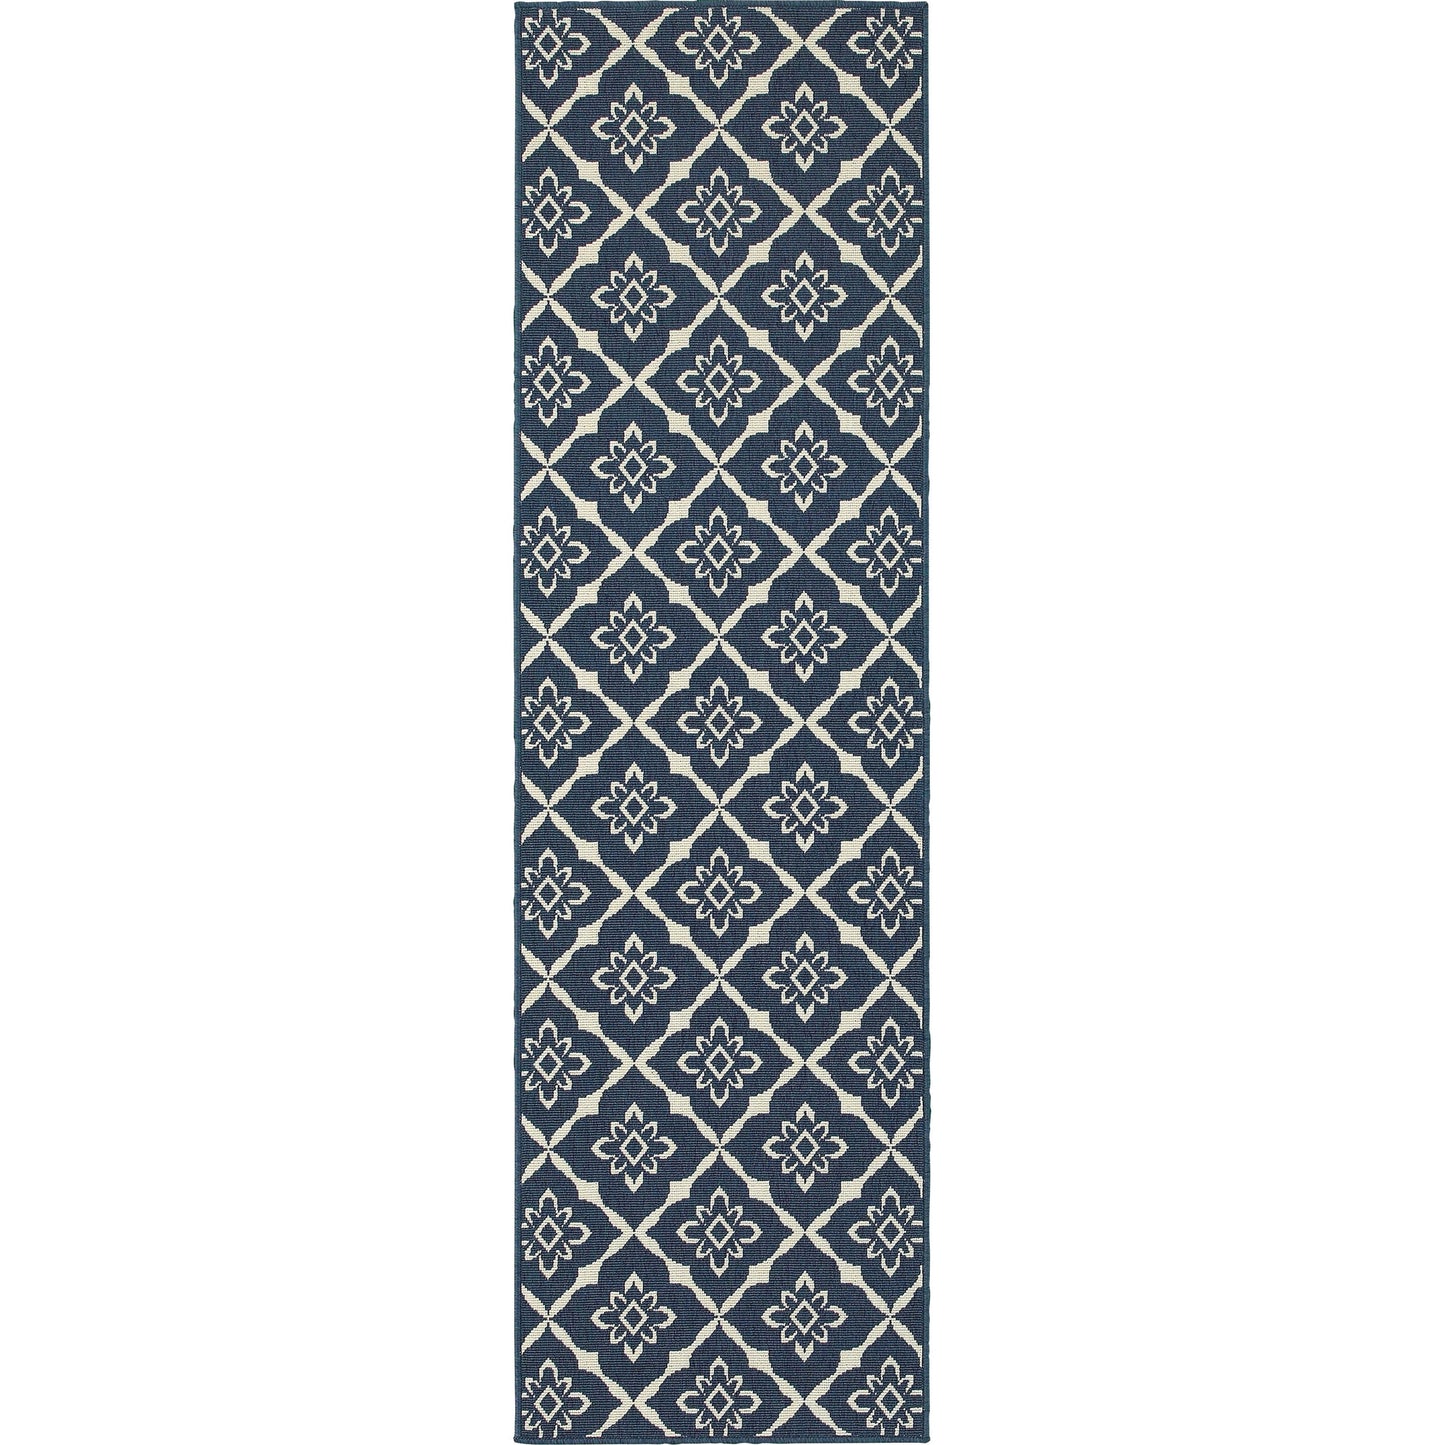 MERIDIAN 5703B Navy, Ivory Rug - Oriental Weavers